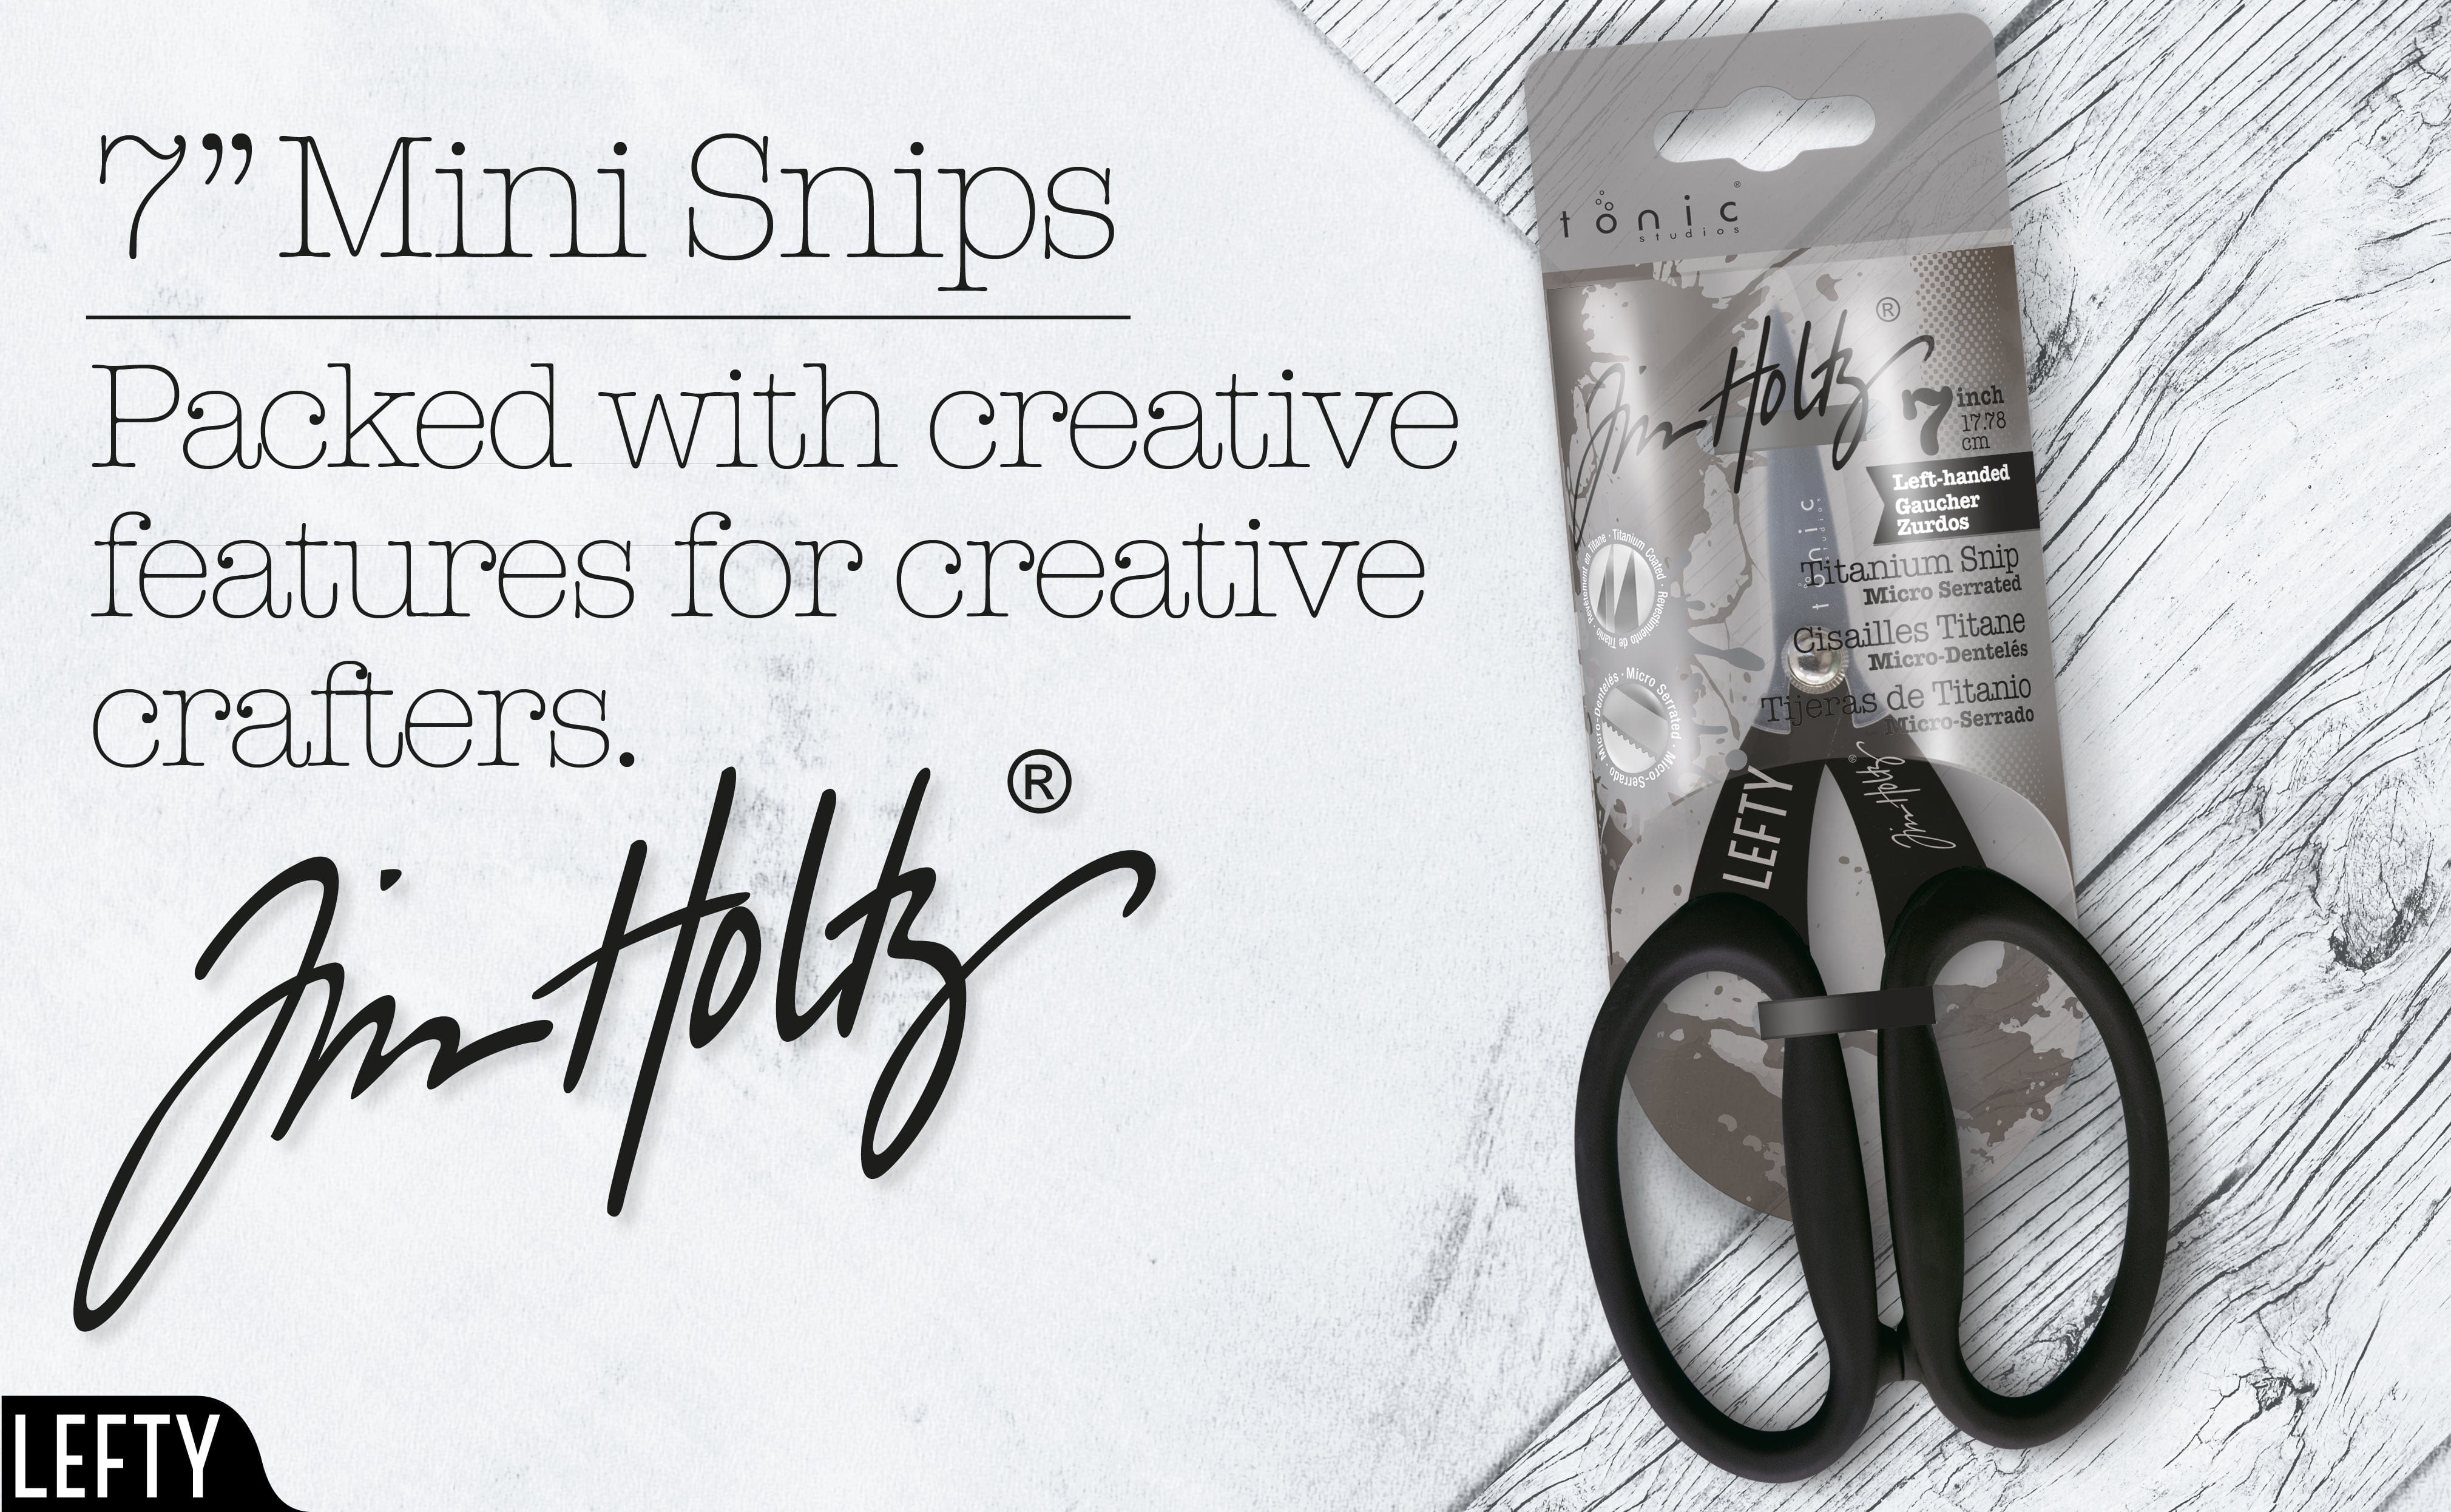 Tim Holtz Scissors & Snips - Kushgrip Non-Stick Serrated Scissors Set -  Mini Snips 5 & Micro Scissors 7 - Bundle of 2 Items